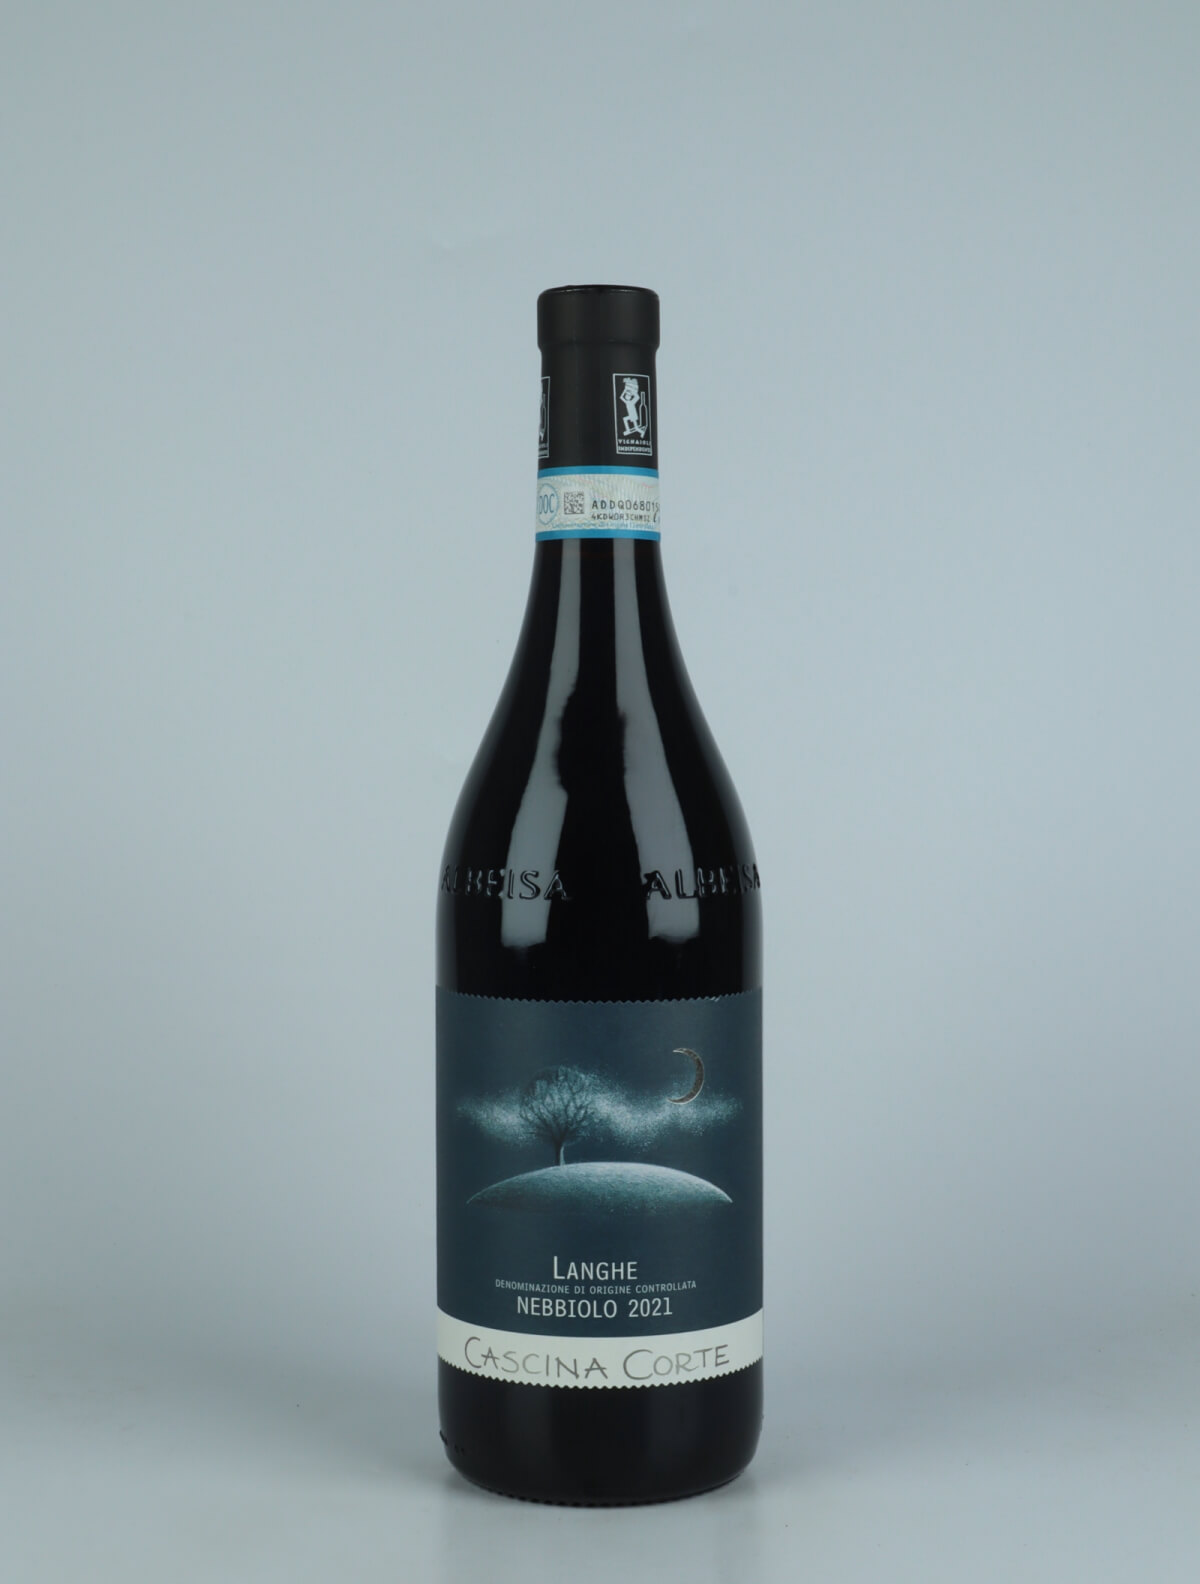 En flaske 2021 Langhe Nebbiolo Rødvin fra Cascina Corte, Piemonte i Italien